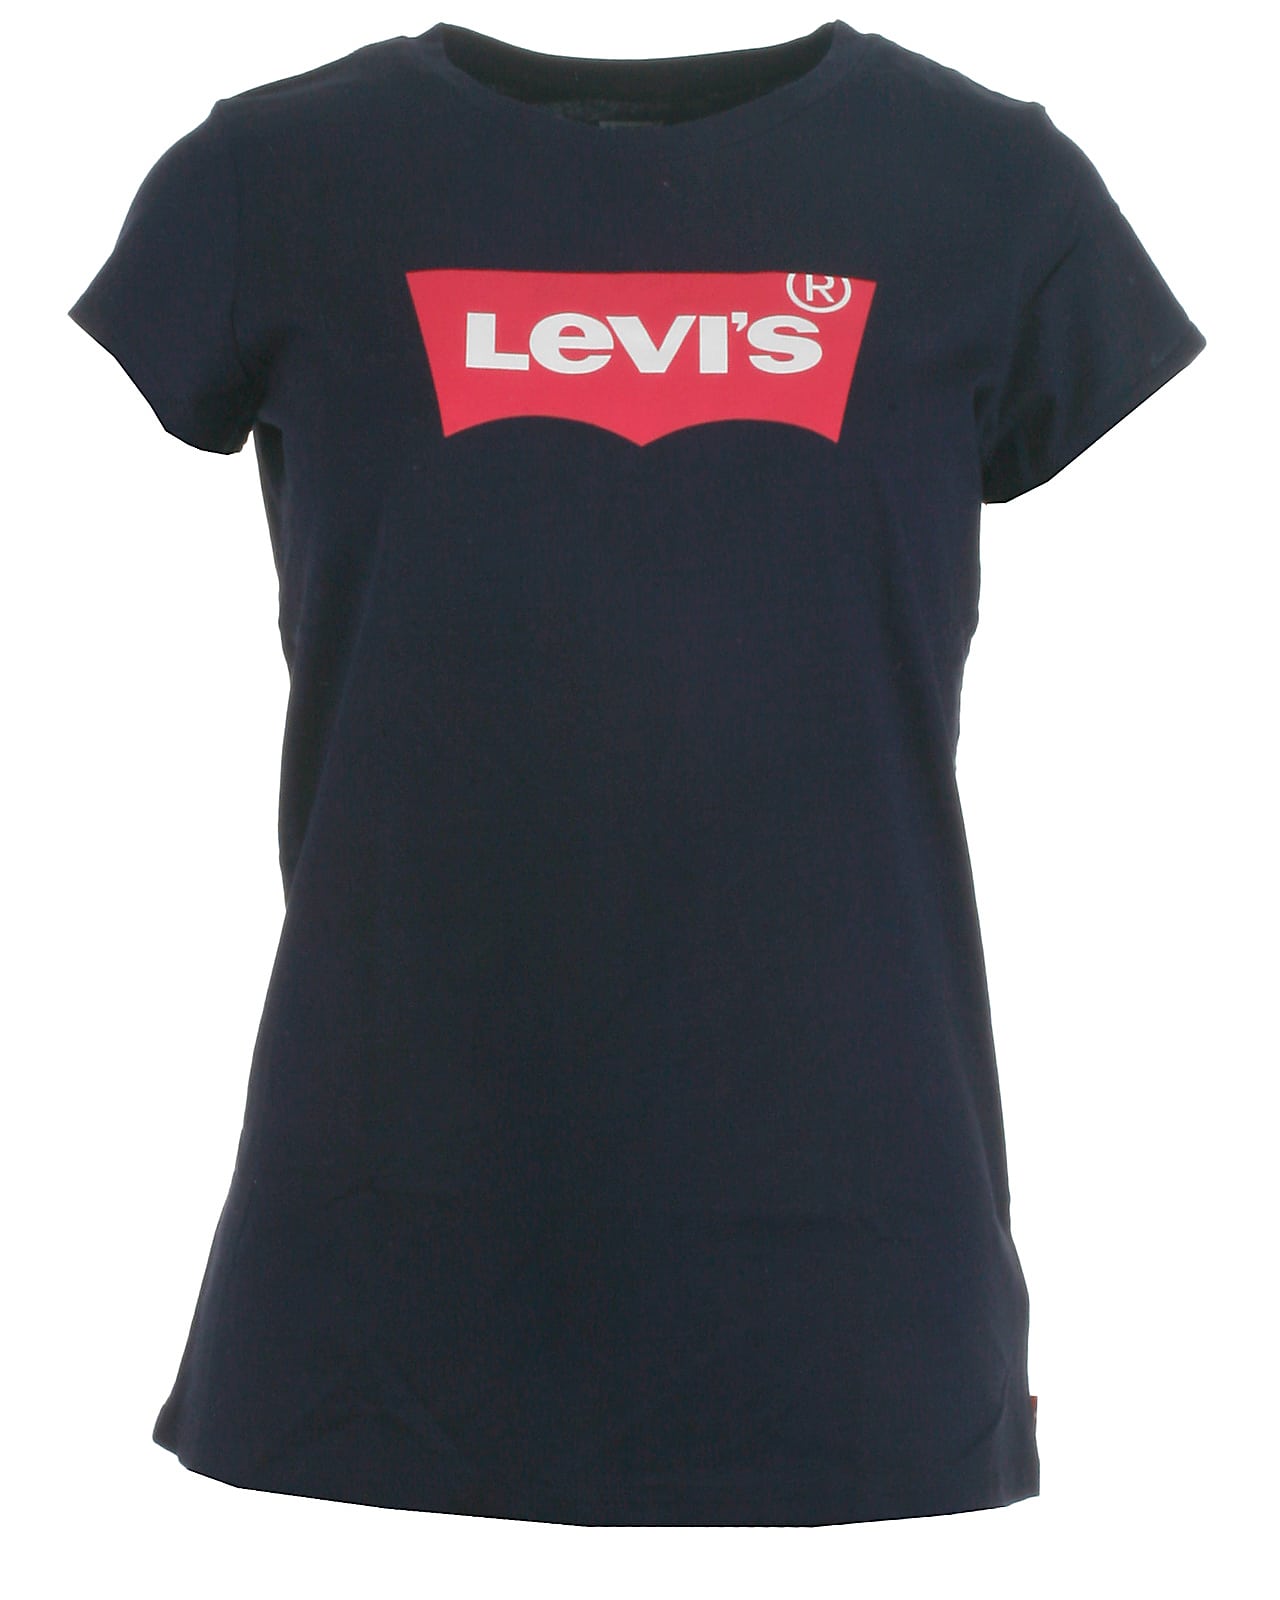 Levis t-shirt s/s